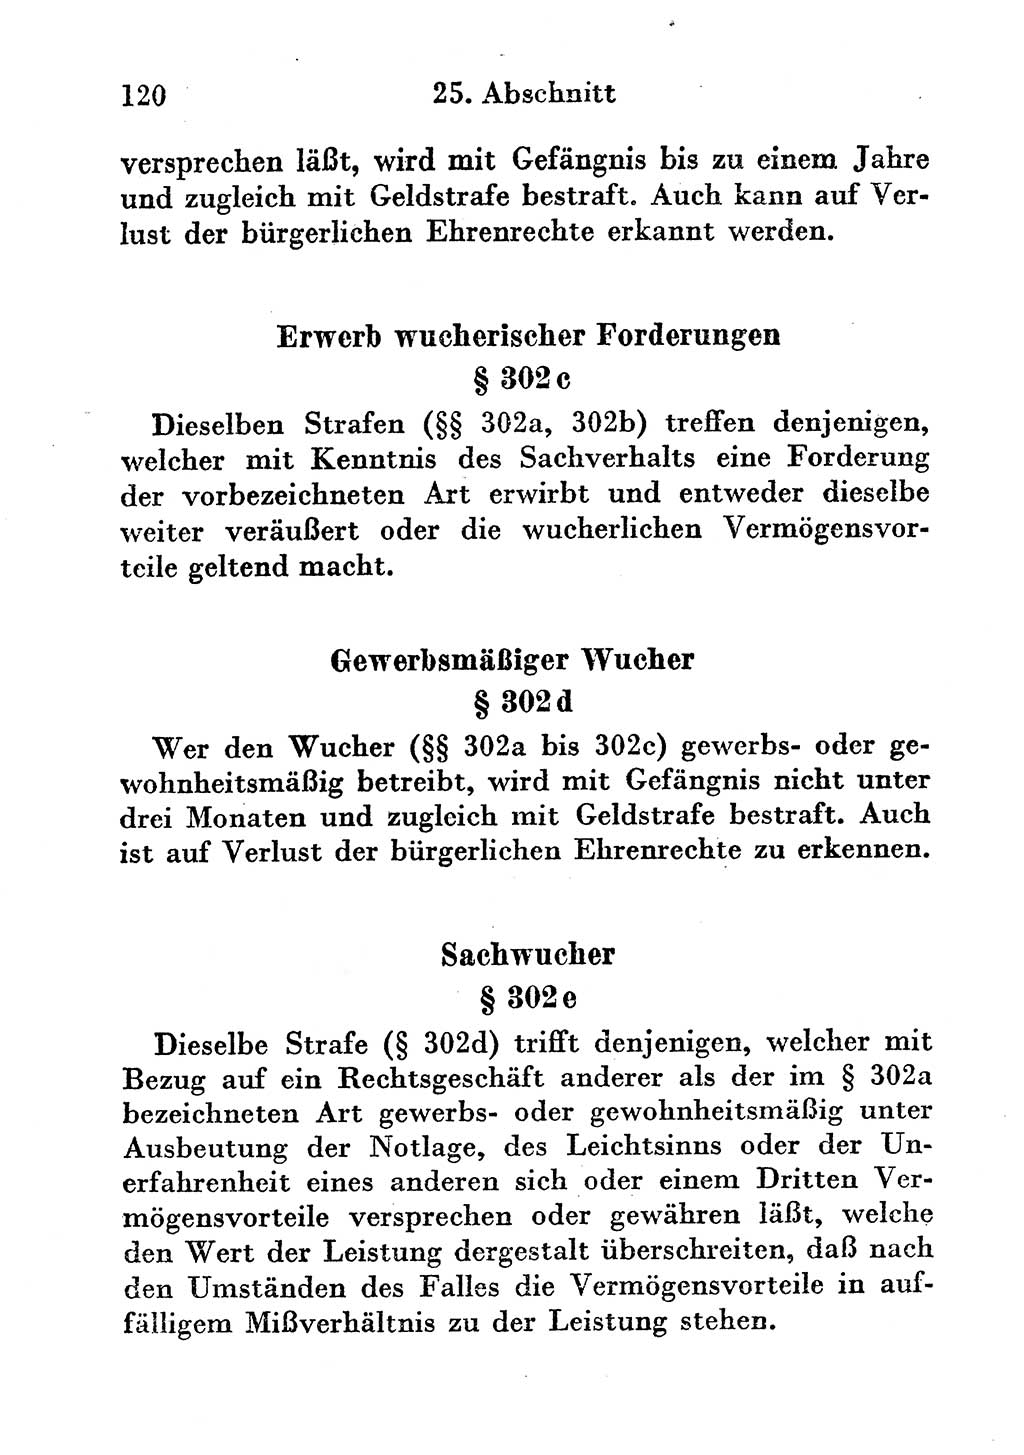 Strafgesetzbuch (StGB) und andere Strafgesetze [Deutsche Demokratische Republik (DDR)] 1956, Seite 120 (StGB Strafges. DDR 1956, S. 120)